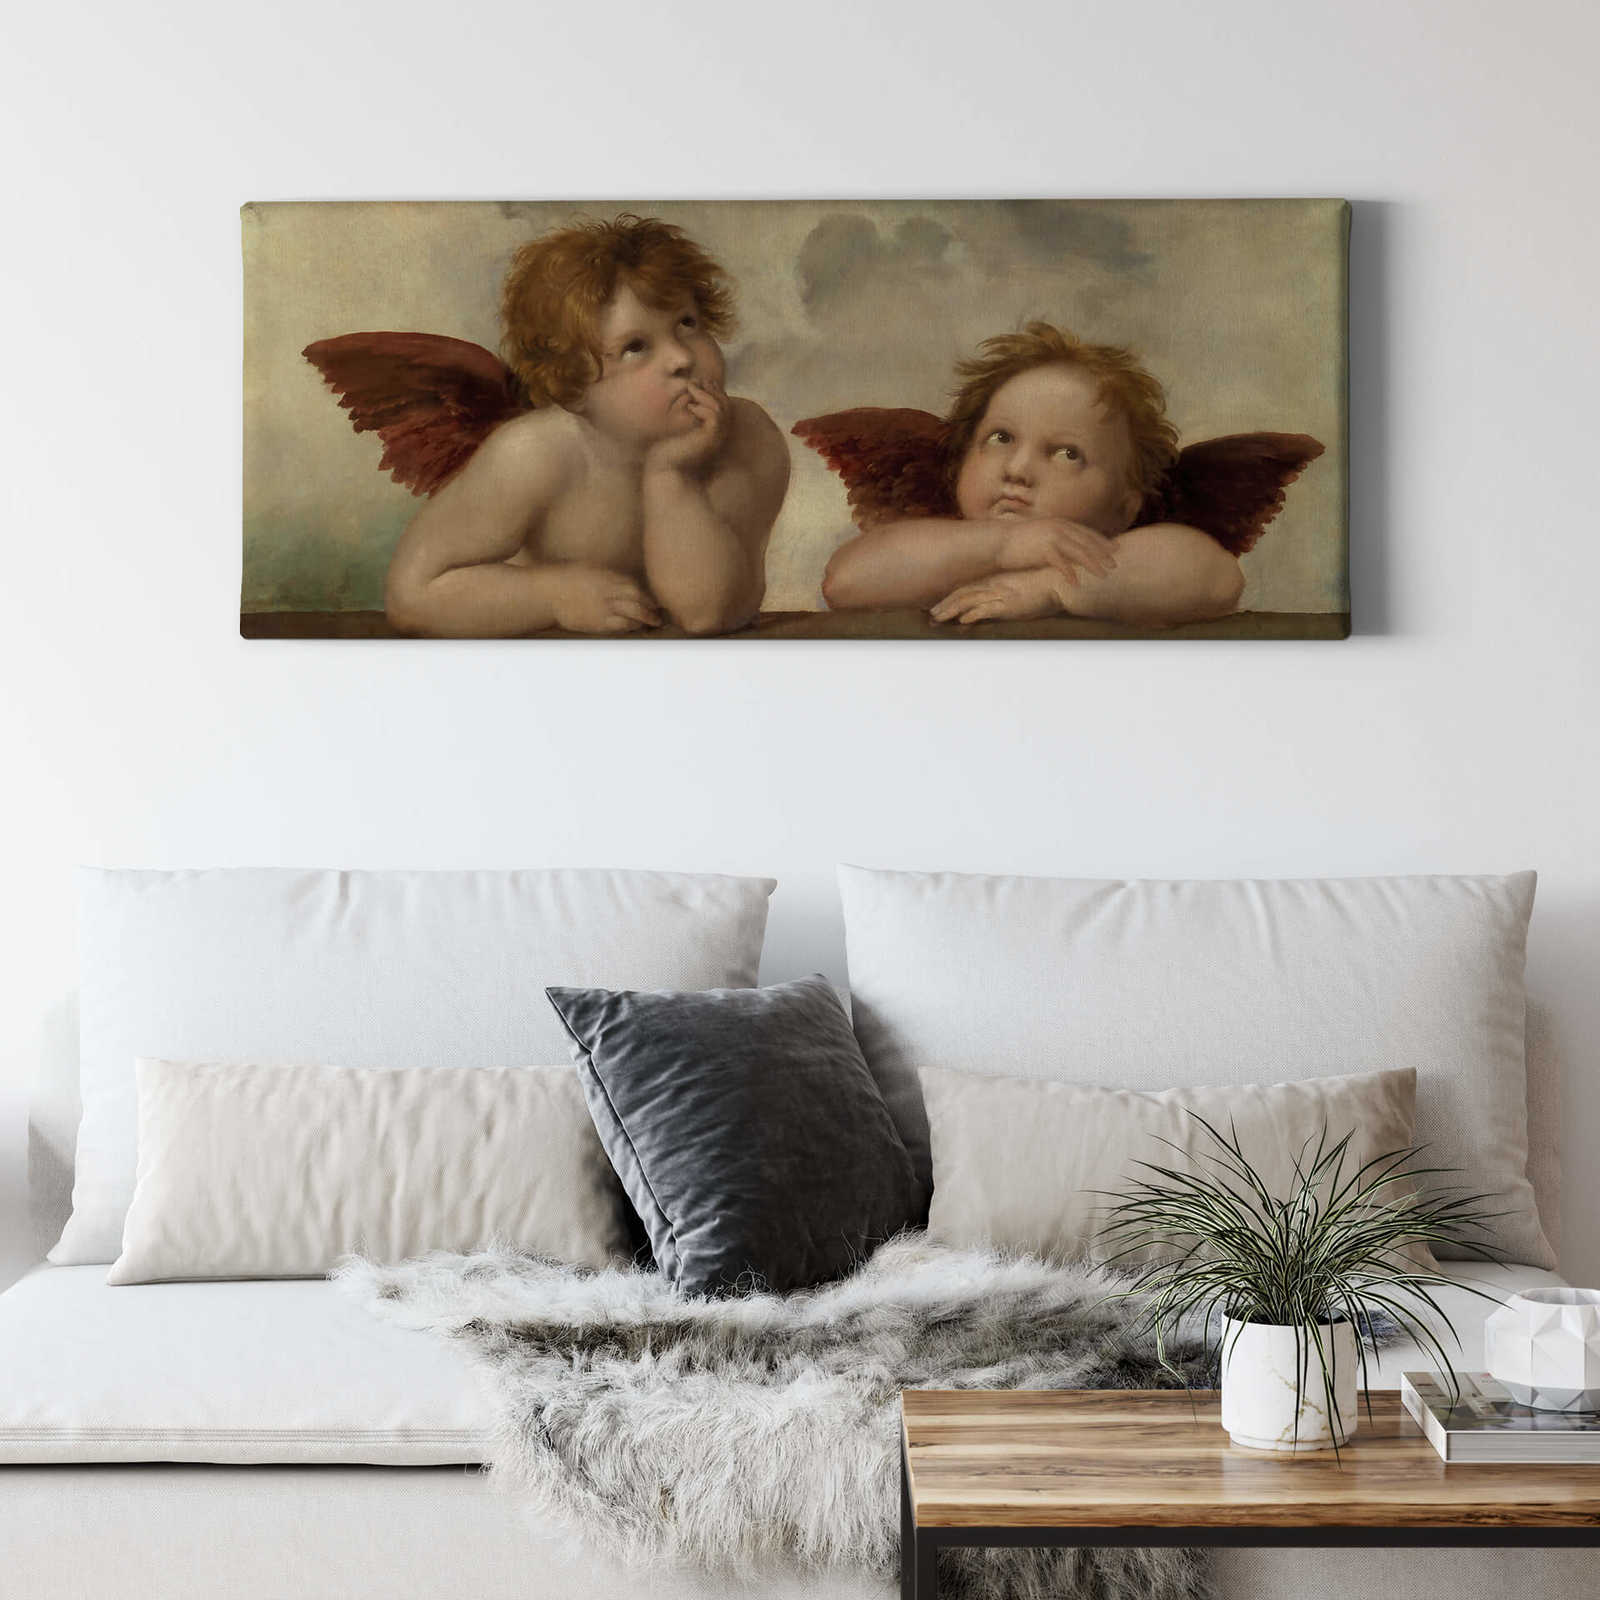             Toile panoramique deux anges de Raphaël - 1,00 m x 0,40 m
        